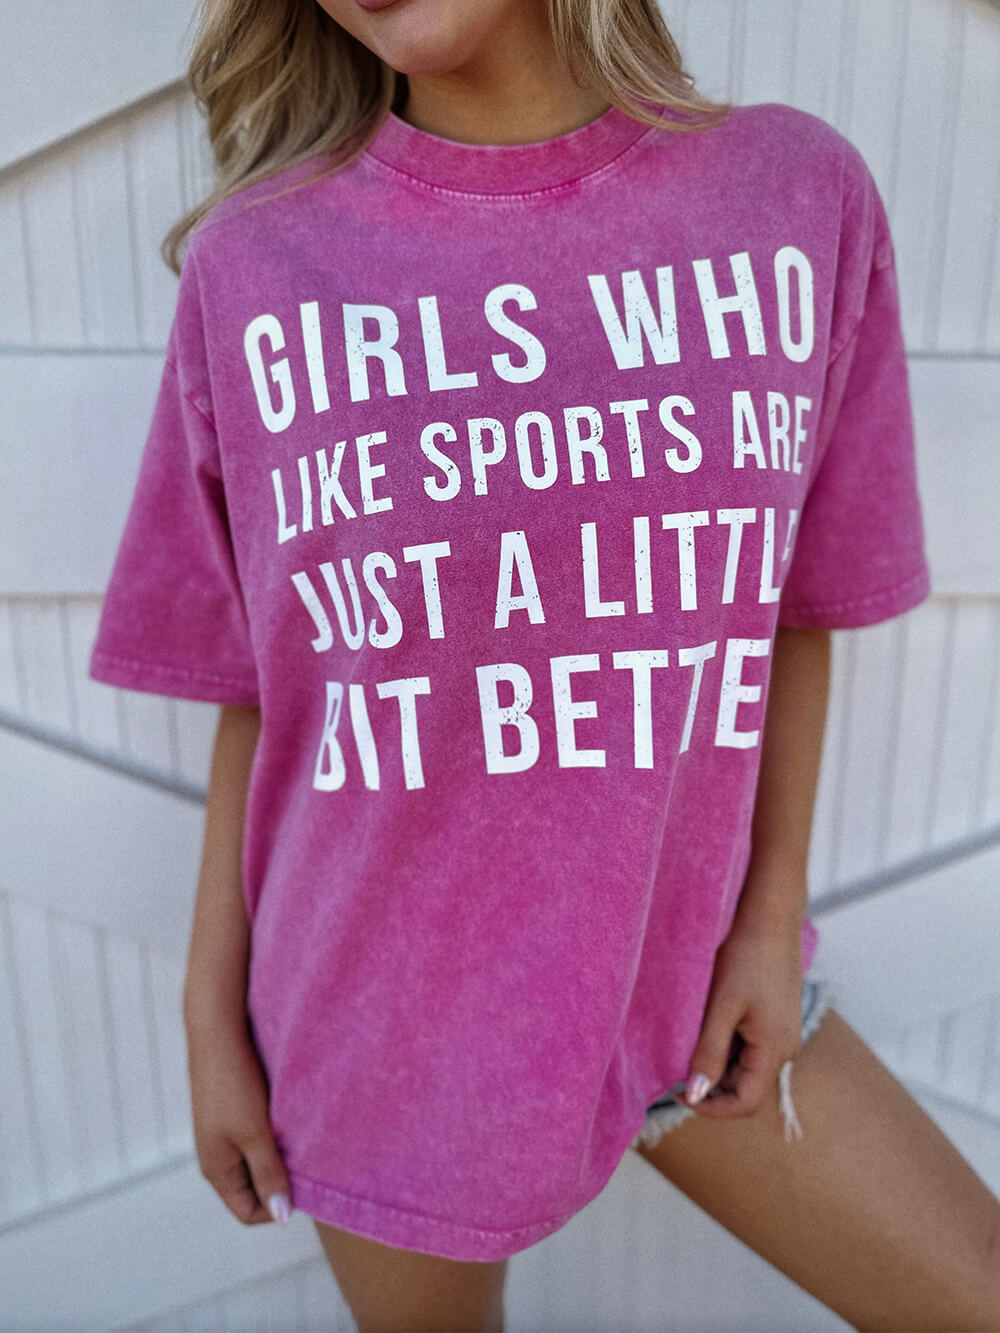 스포츠를 좋아하는 미네랄워시 소녀들이 조금 더 나은 핑크테